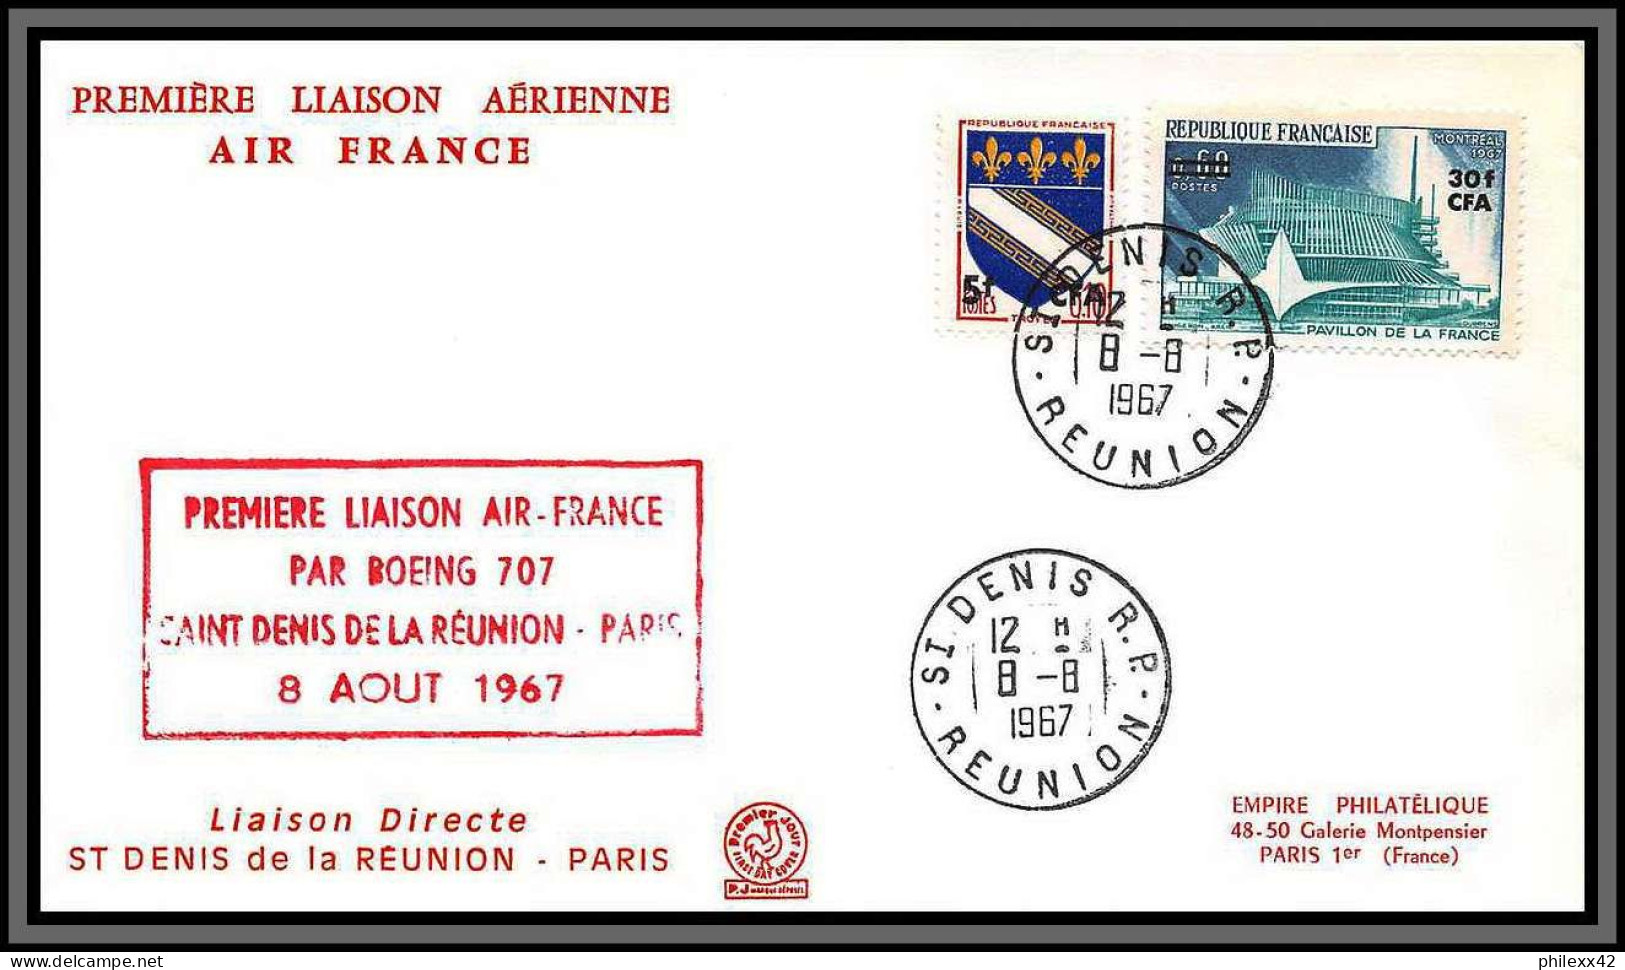 10676 1ère Liaison Air France Par Boeing 707 Saint Denis De La Reunion Paris 8/8/1967 Cfa Fdc Enveloppe Premier Jour  - Primi Voli